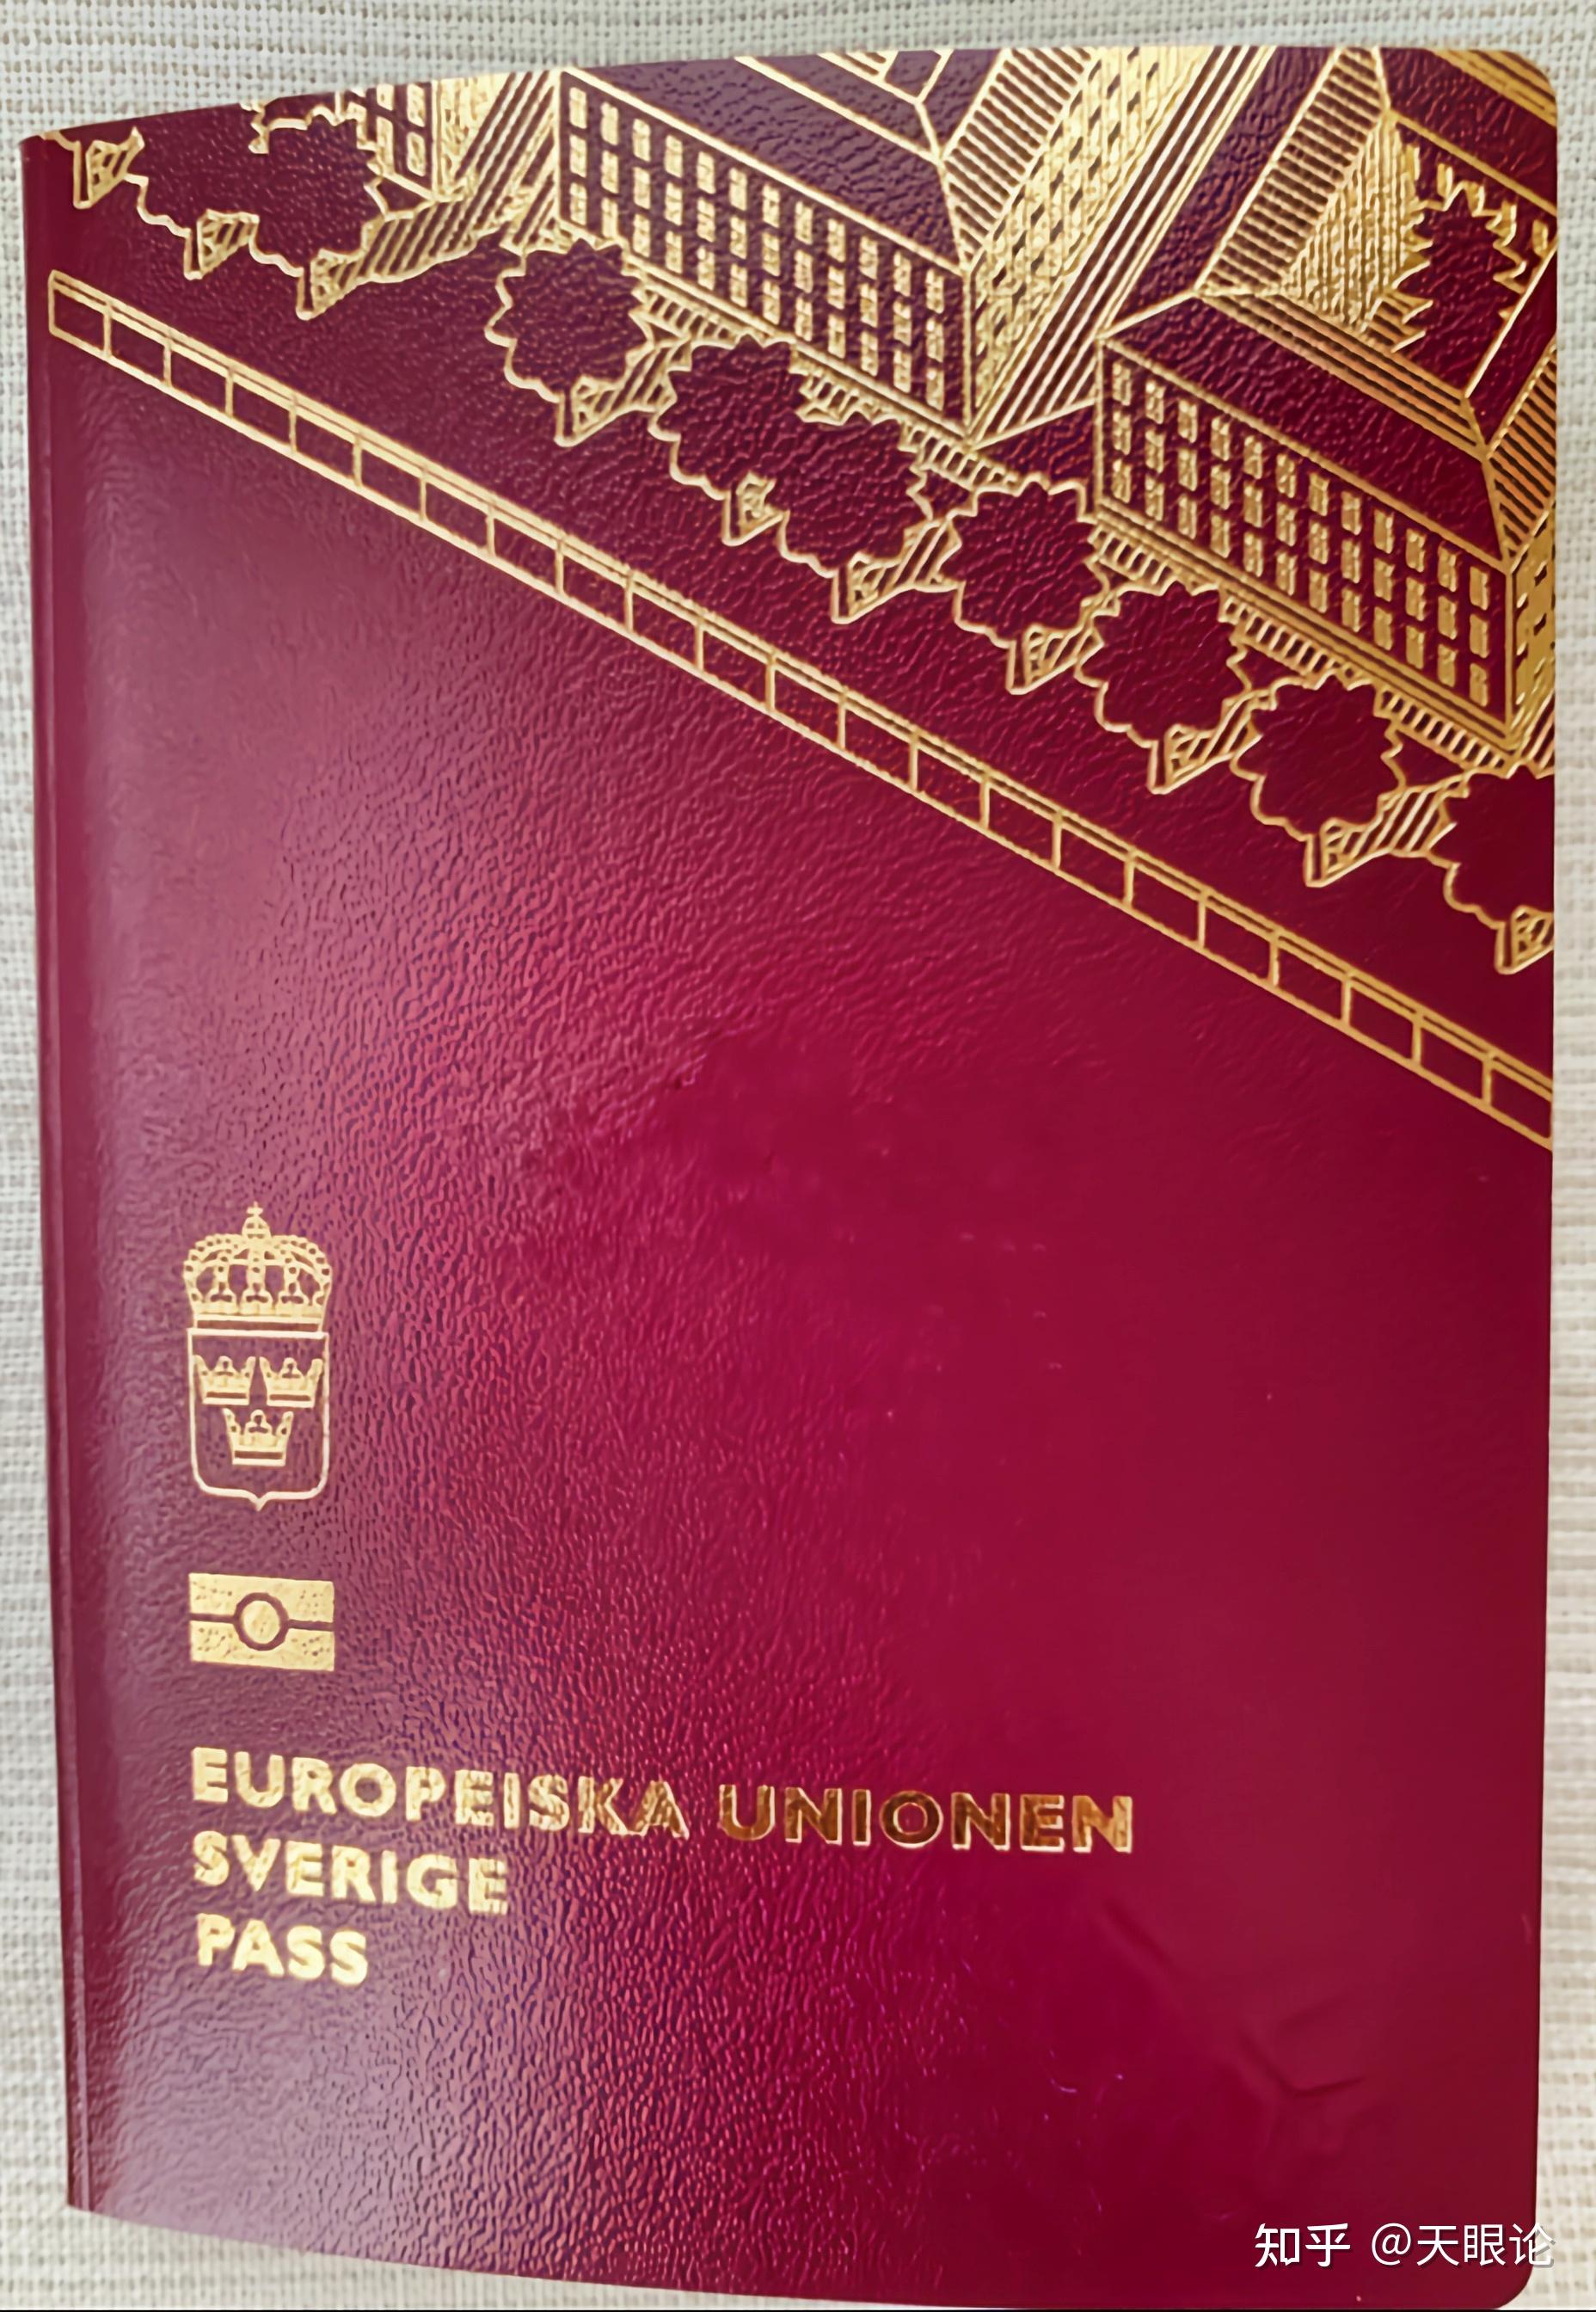 罗马的意大利护照文件 库存图片. 图片 包括有 筹码, 办公室, 社论, 对象, 看板卡, 电子, 说明 - 194673899